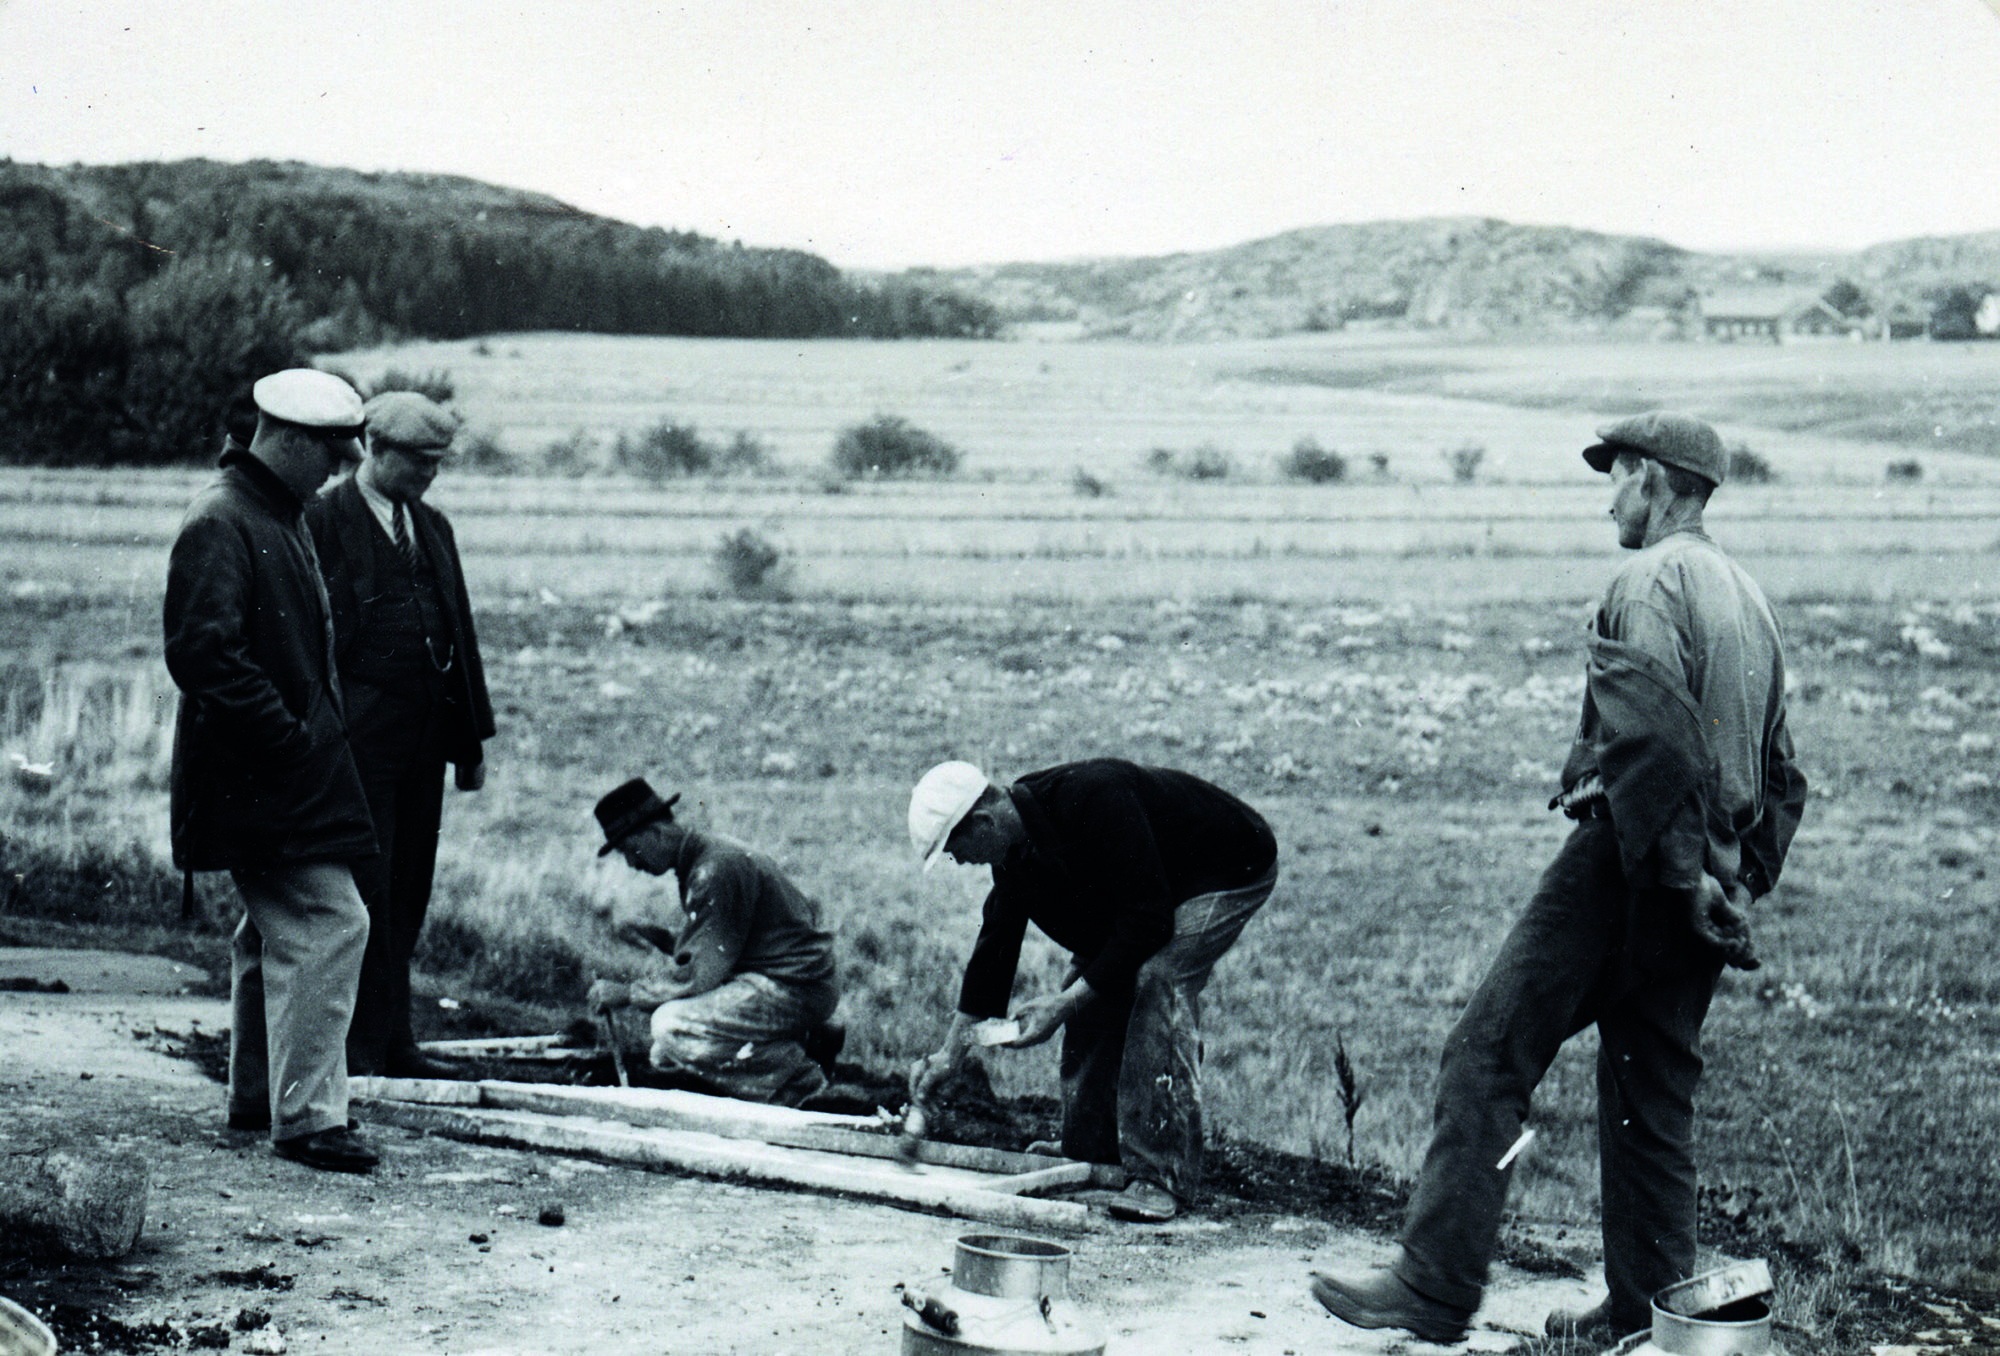 Arbeiderne er i gang med gipsavstøpningen i Tanum, 1935. Foto: Herman Wirth. Kilde: Svenskt Hällristnings Forsknings Arkiv (www.shfa.se)